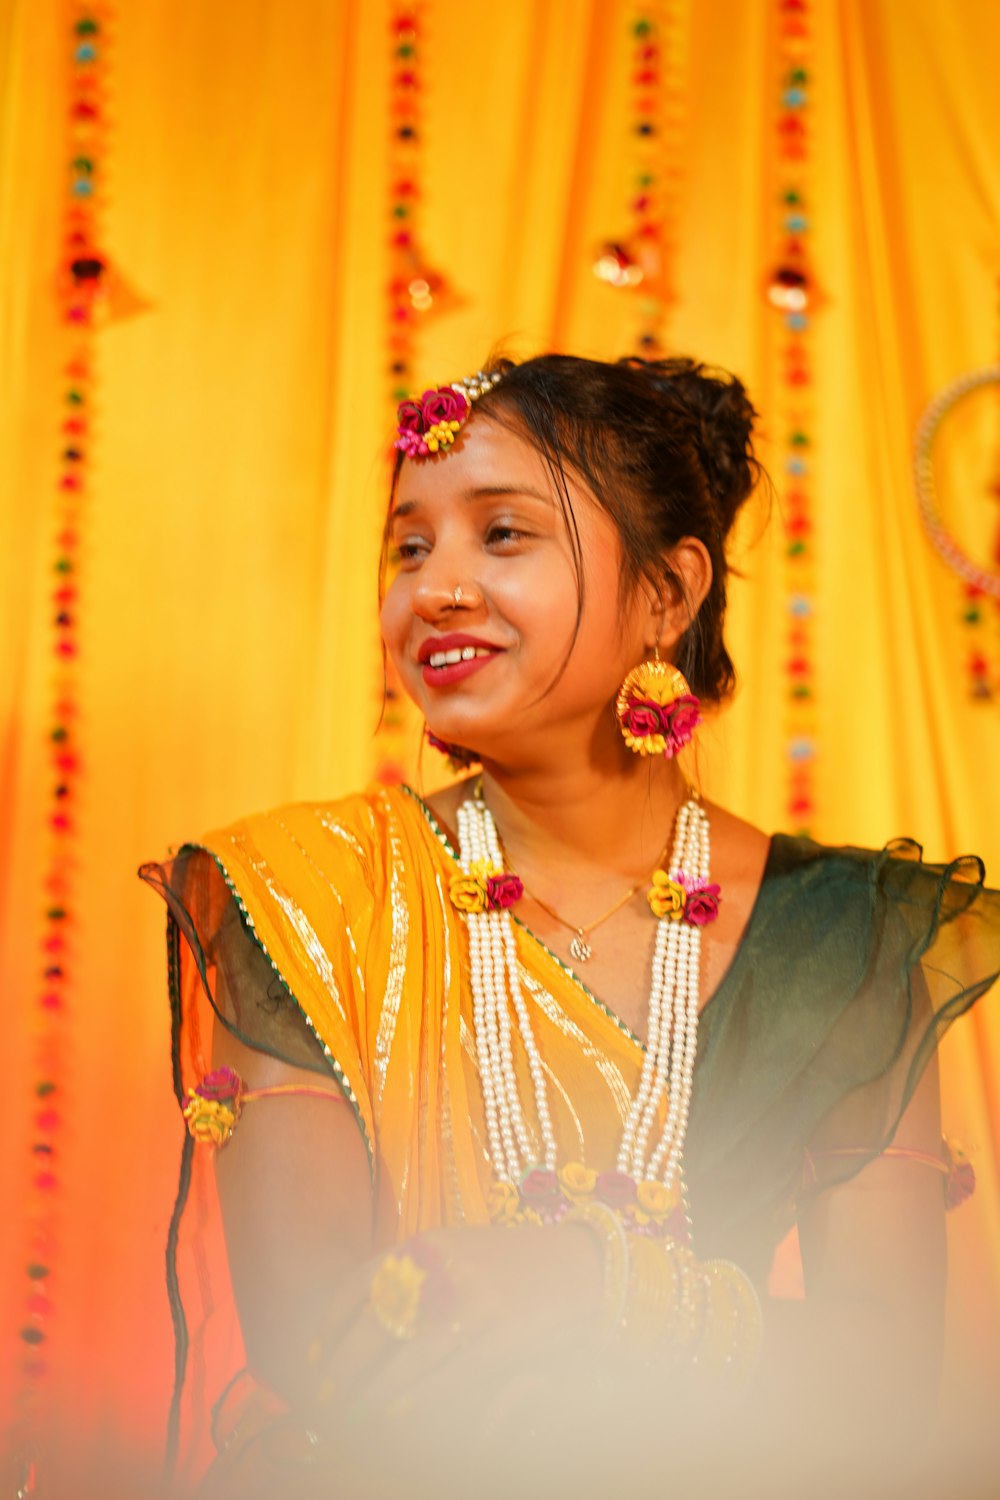 Una mujer con un sari amarillo sonríe a la cámara